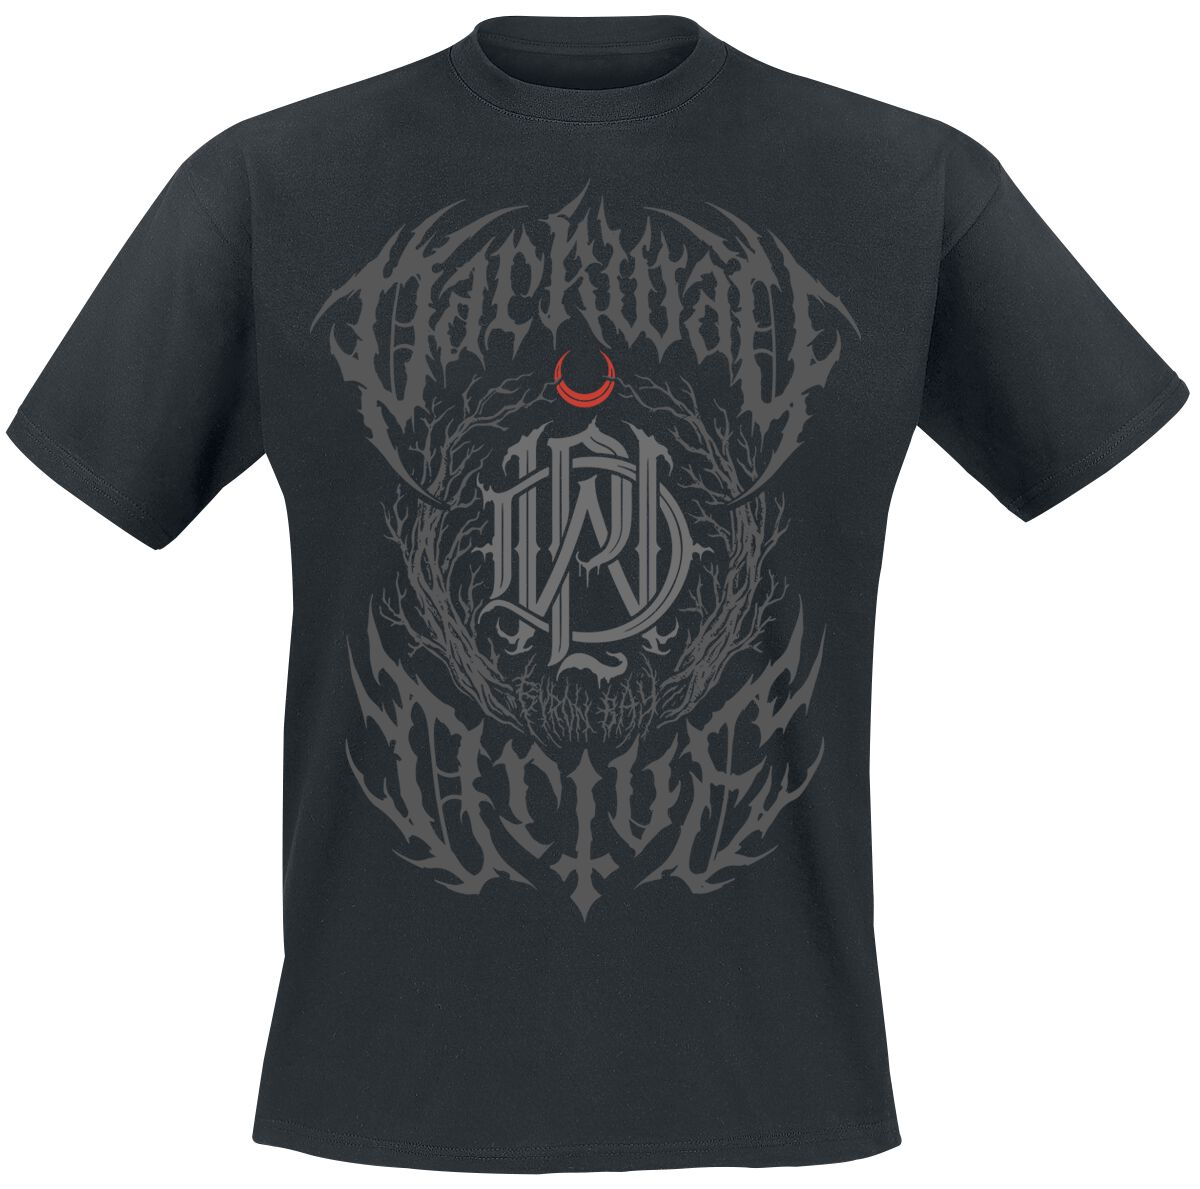 Parkway Drive T-Shirt - Metal Crest - S bis XXL - für Männer - Größe S - schwarz  - Lizenziertes Merchandise!